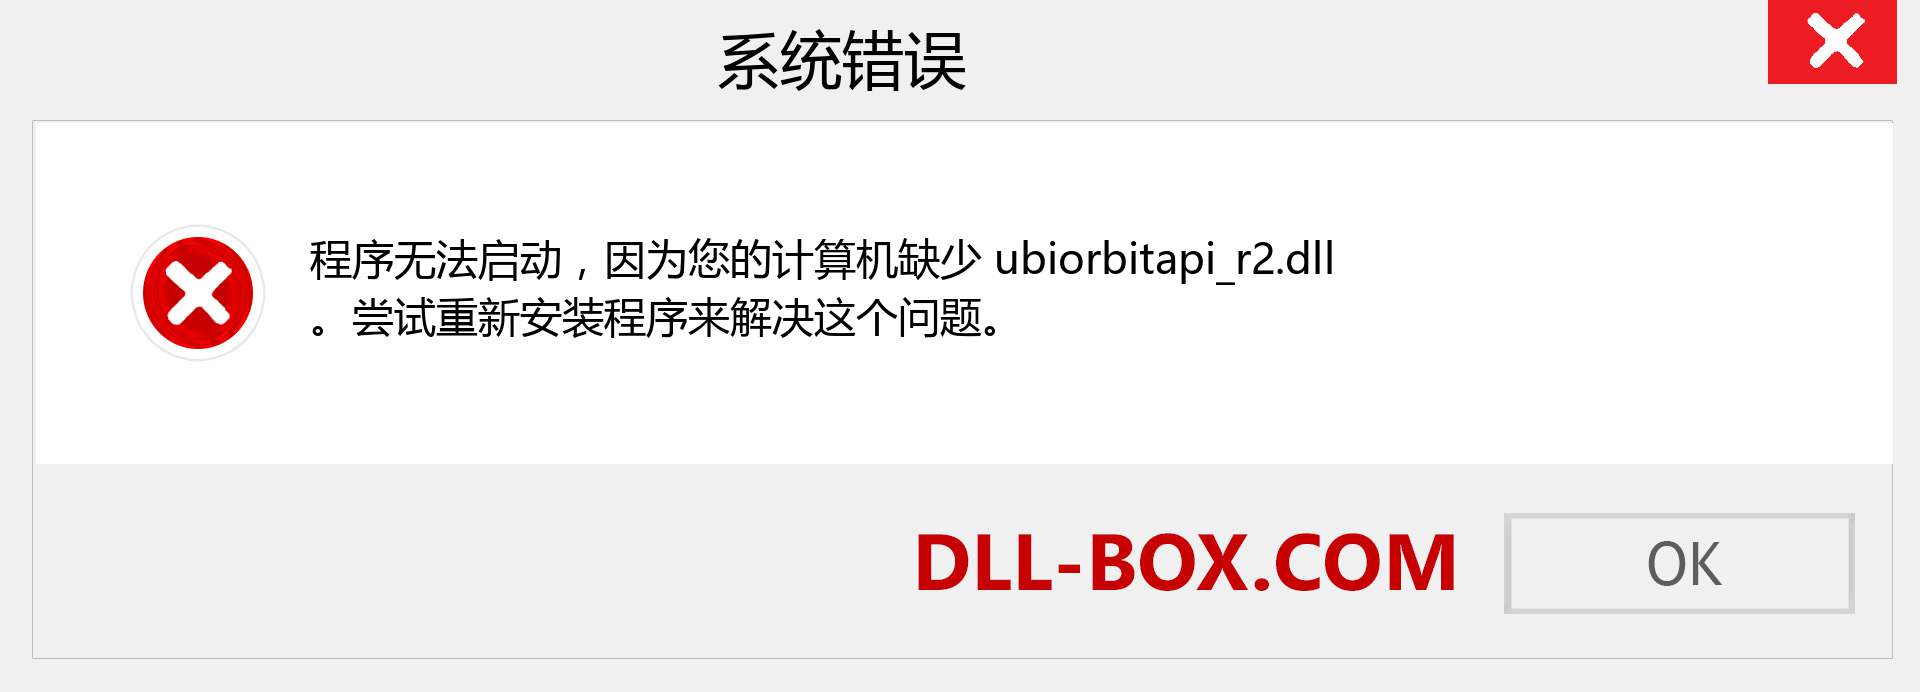 ubiorbitapi_r2.dll 文件丢失？。 适用于 Windows 7、8、10 的下载 - 修复 Windows、照片、图像上的 ubiorbitapi_r2 dll 丢失错误